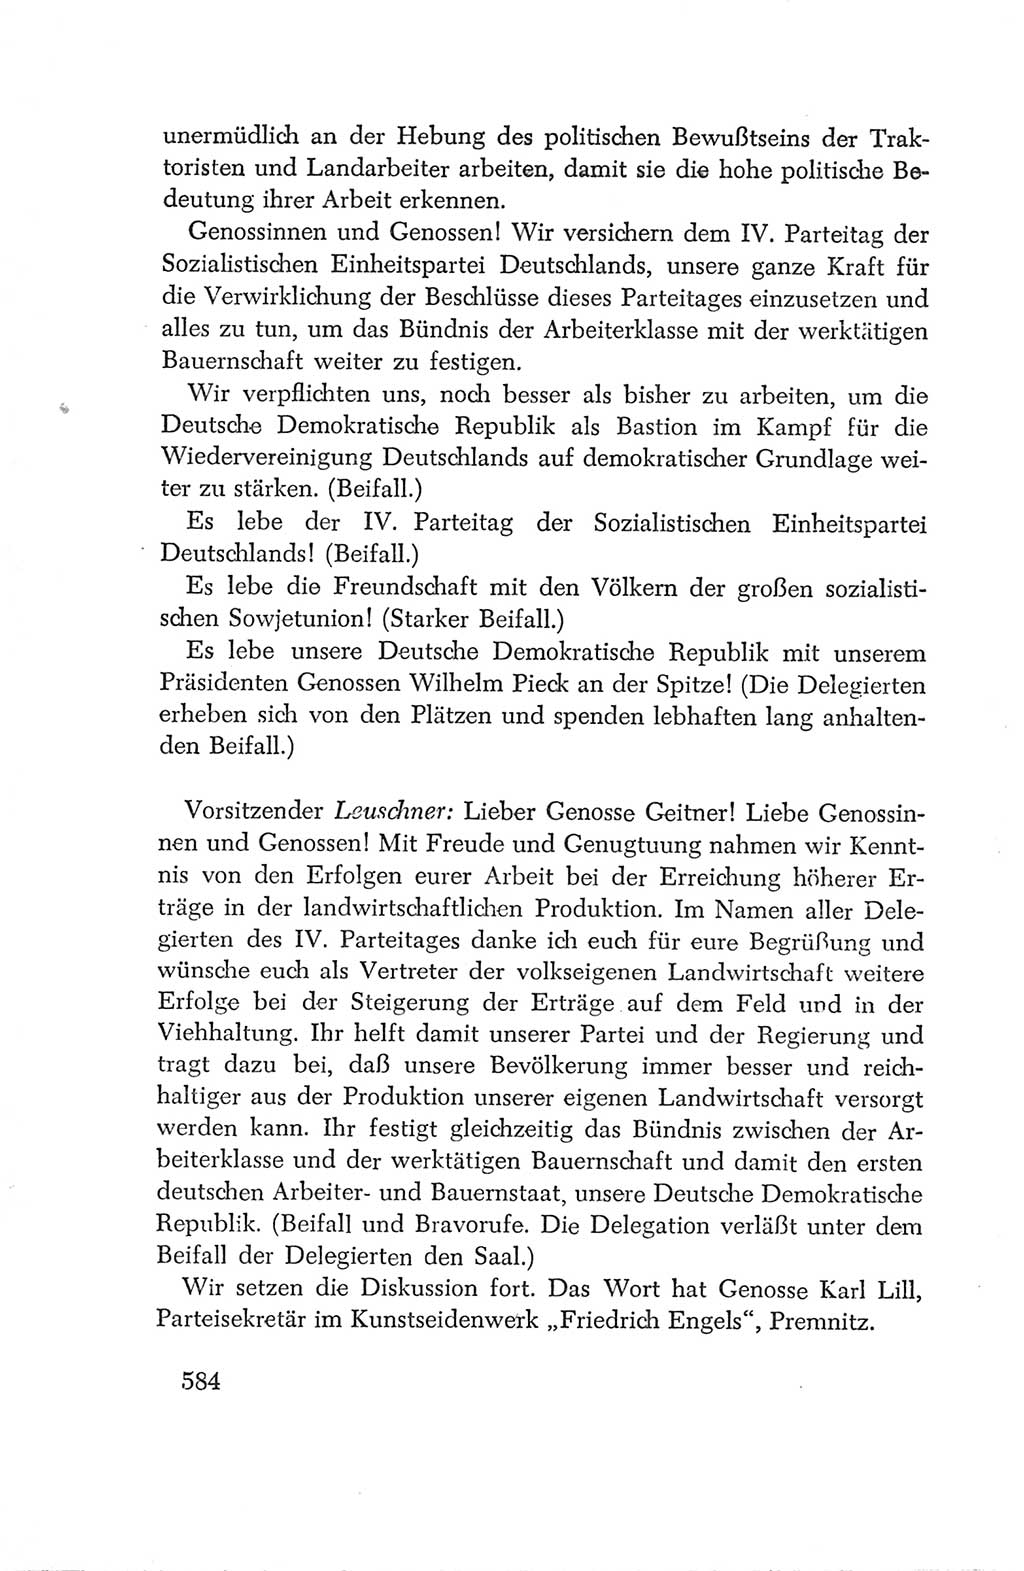 Protokoll der Verhandlungen des Ⅳ. Parteitages der Sozialistischen Einheitspartei Deutschlands (SED) [Deutsche Demokratische Republik (DDR)] 1954, Seite 584